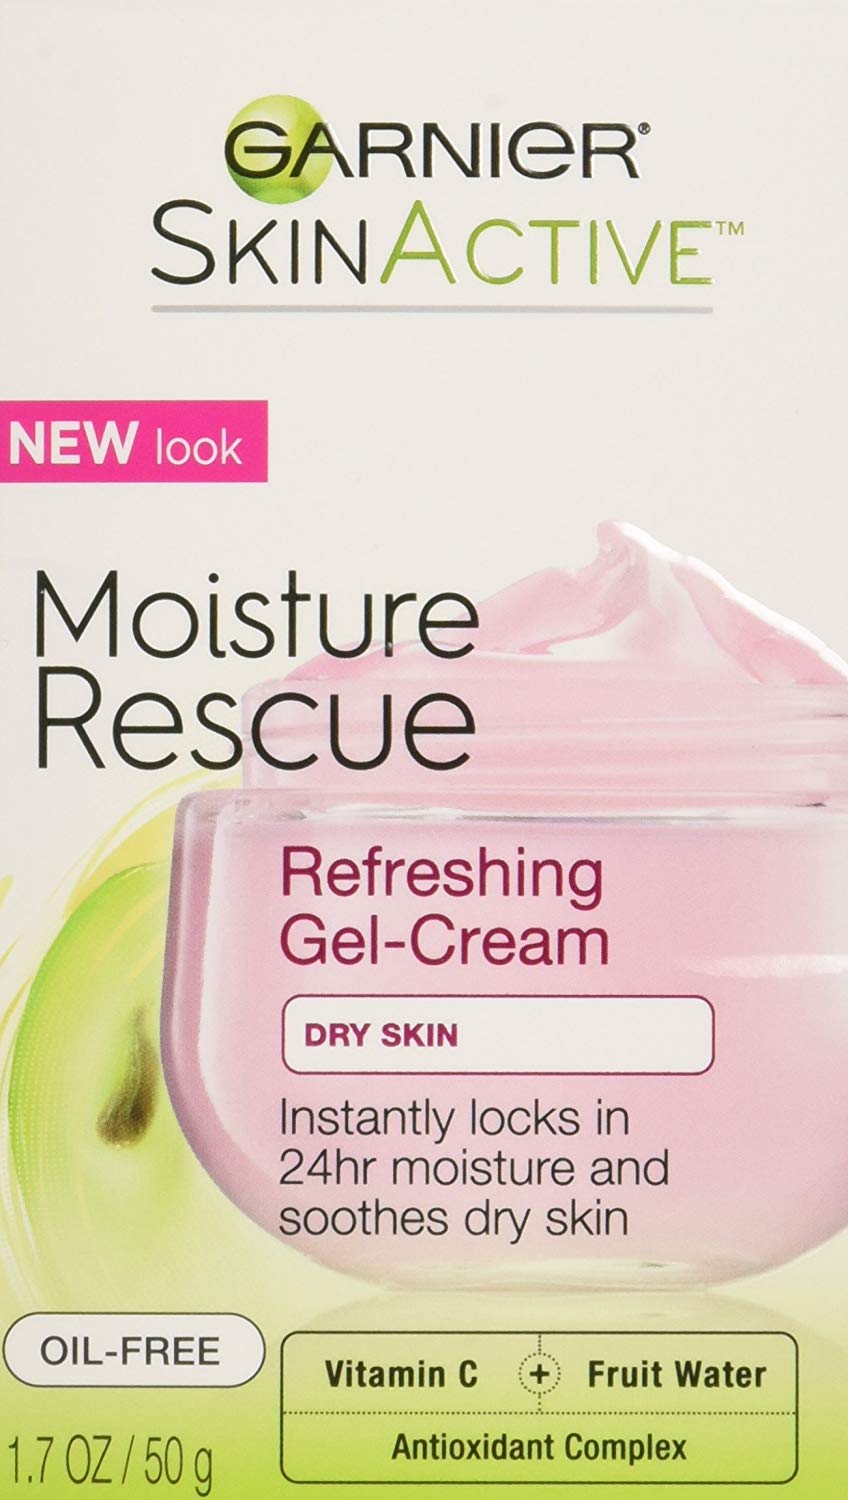 Garnier SkinActive Moisture Rescue Refreshing Gel-Cream for Dry Skin, 1.7 oz (50 g)